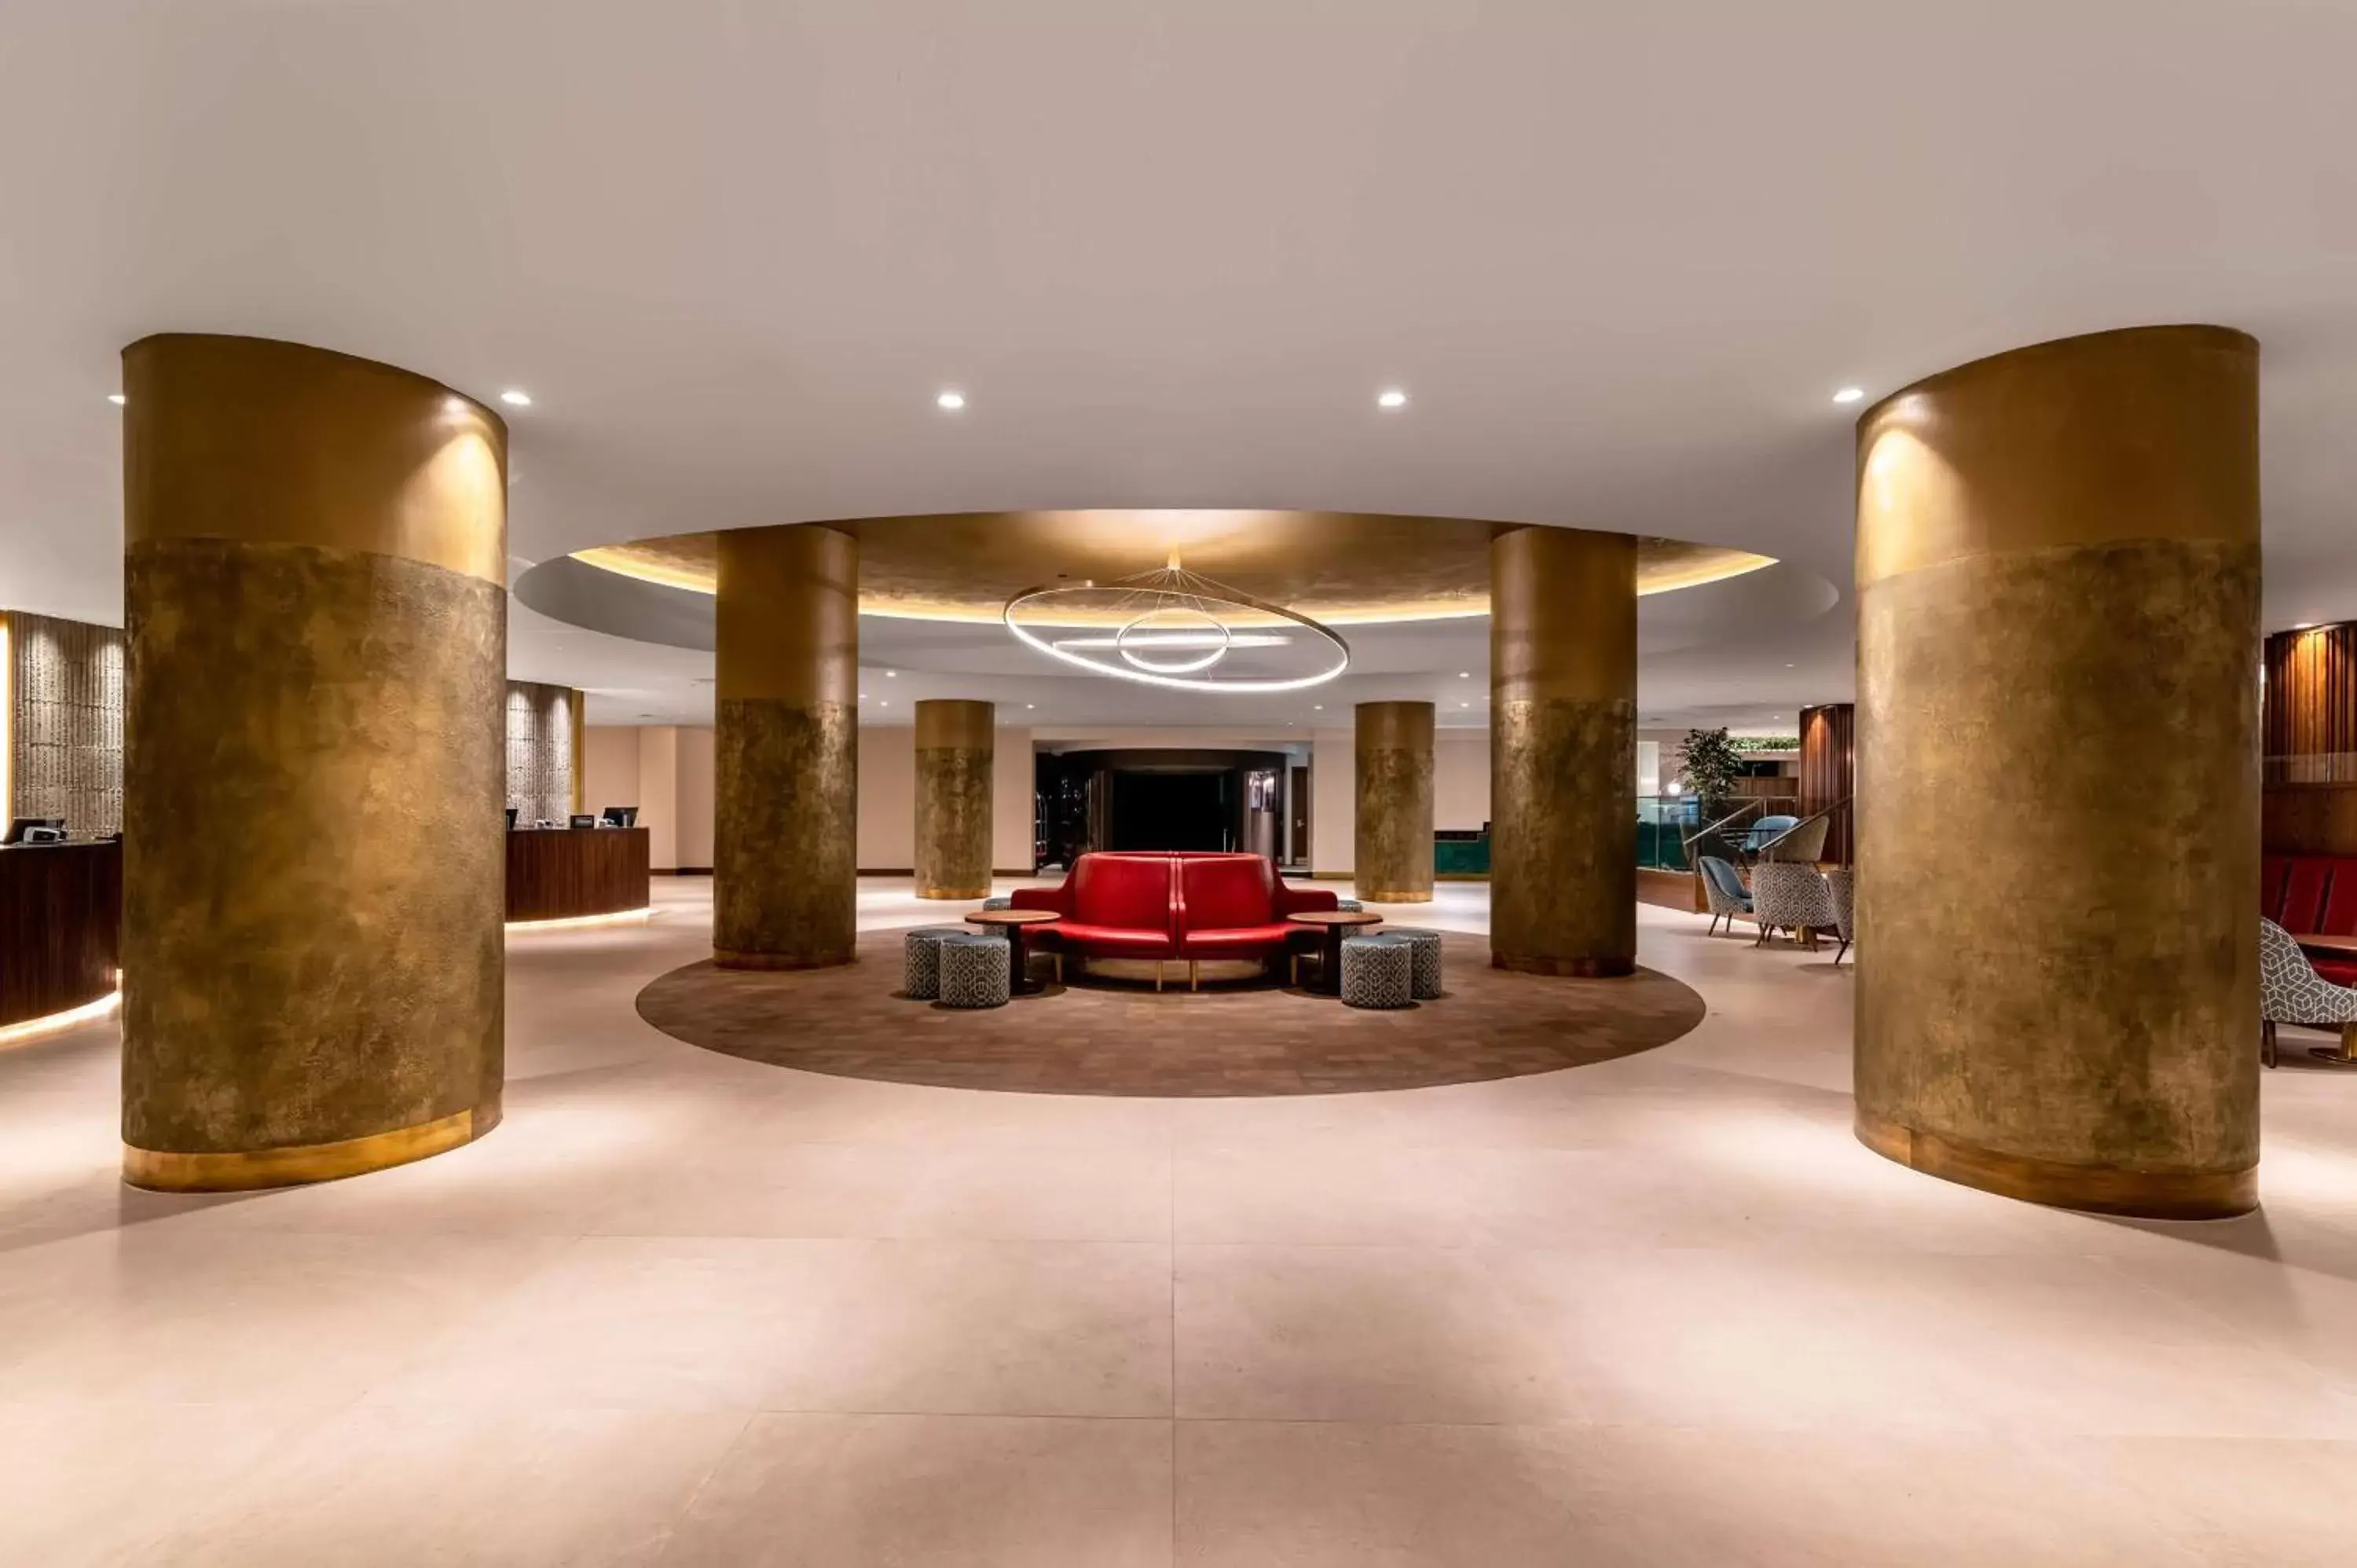 Lobby or reception, Lobby/Reception in Hilton Birmingham Metropole Hotel